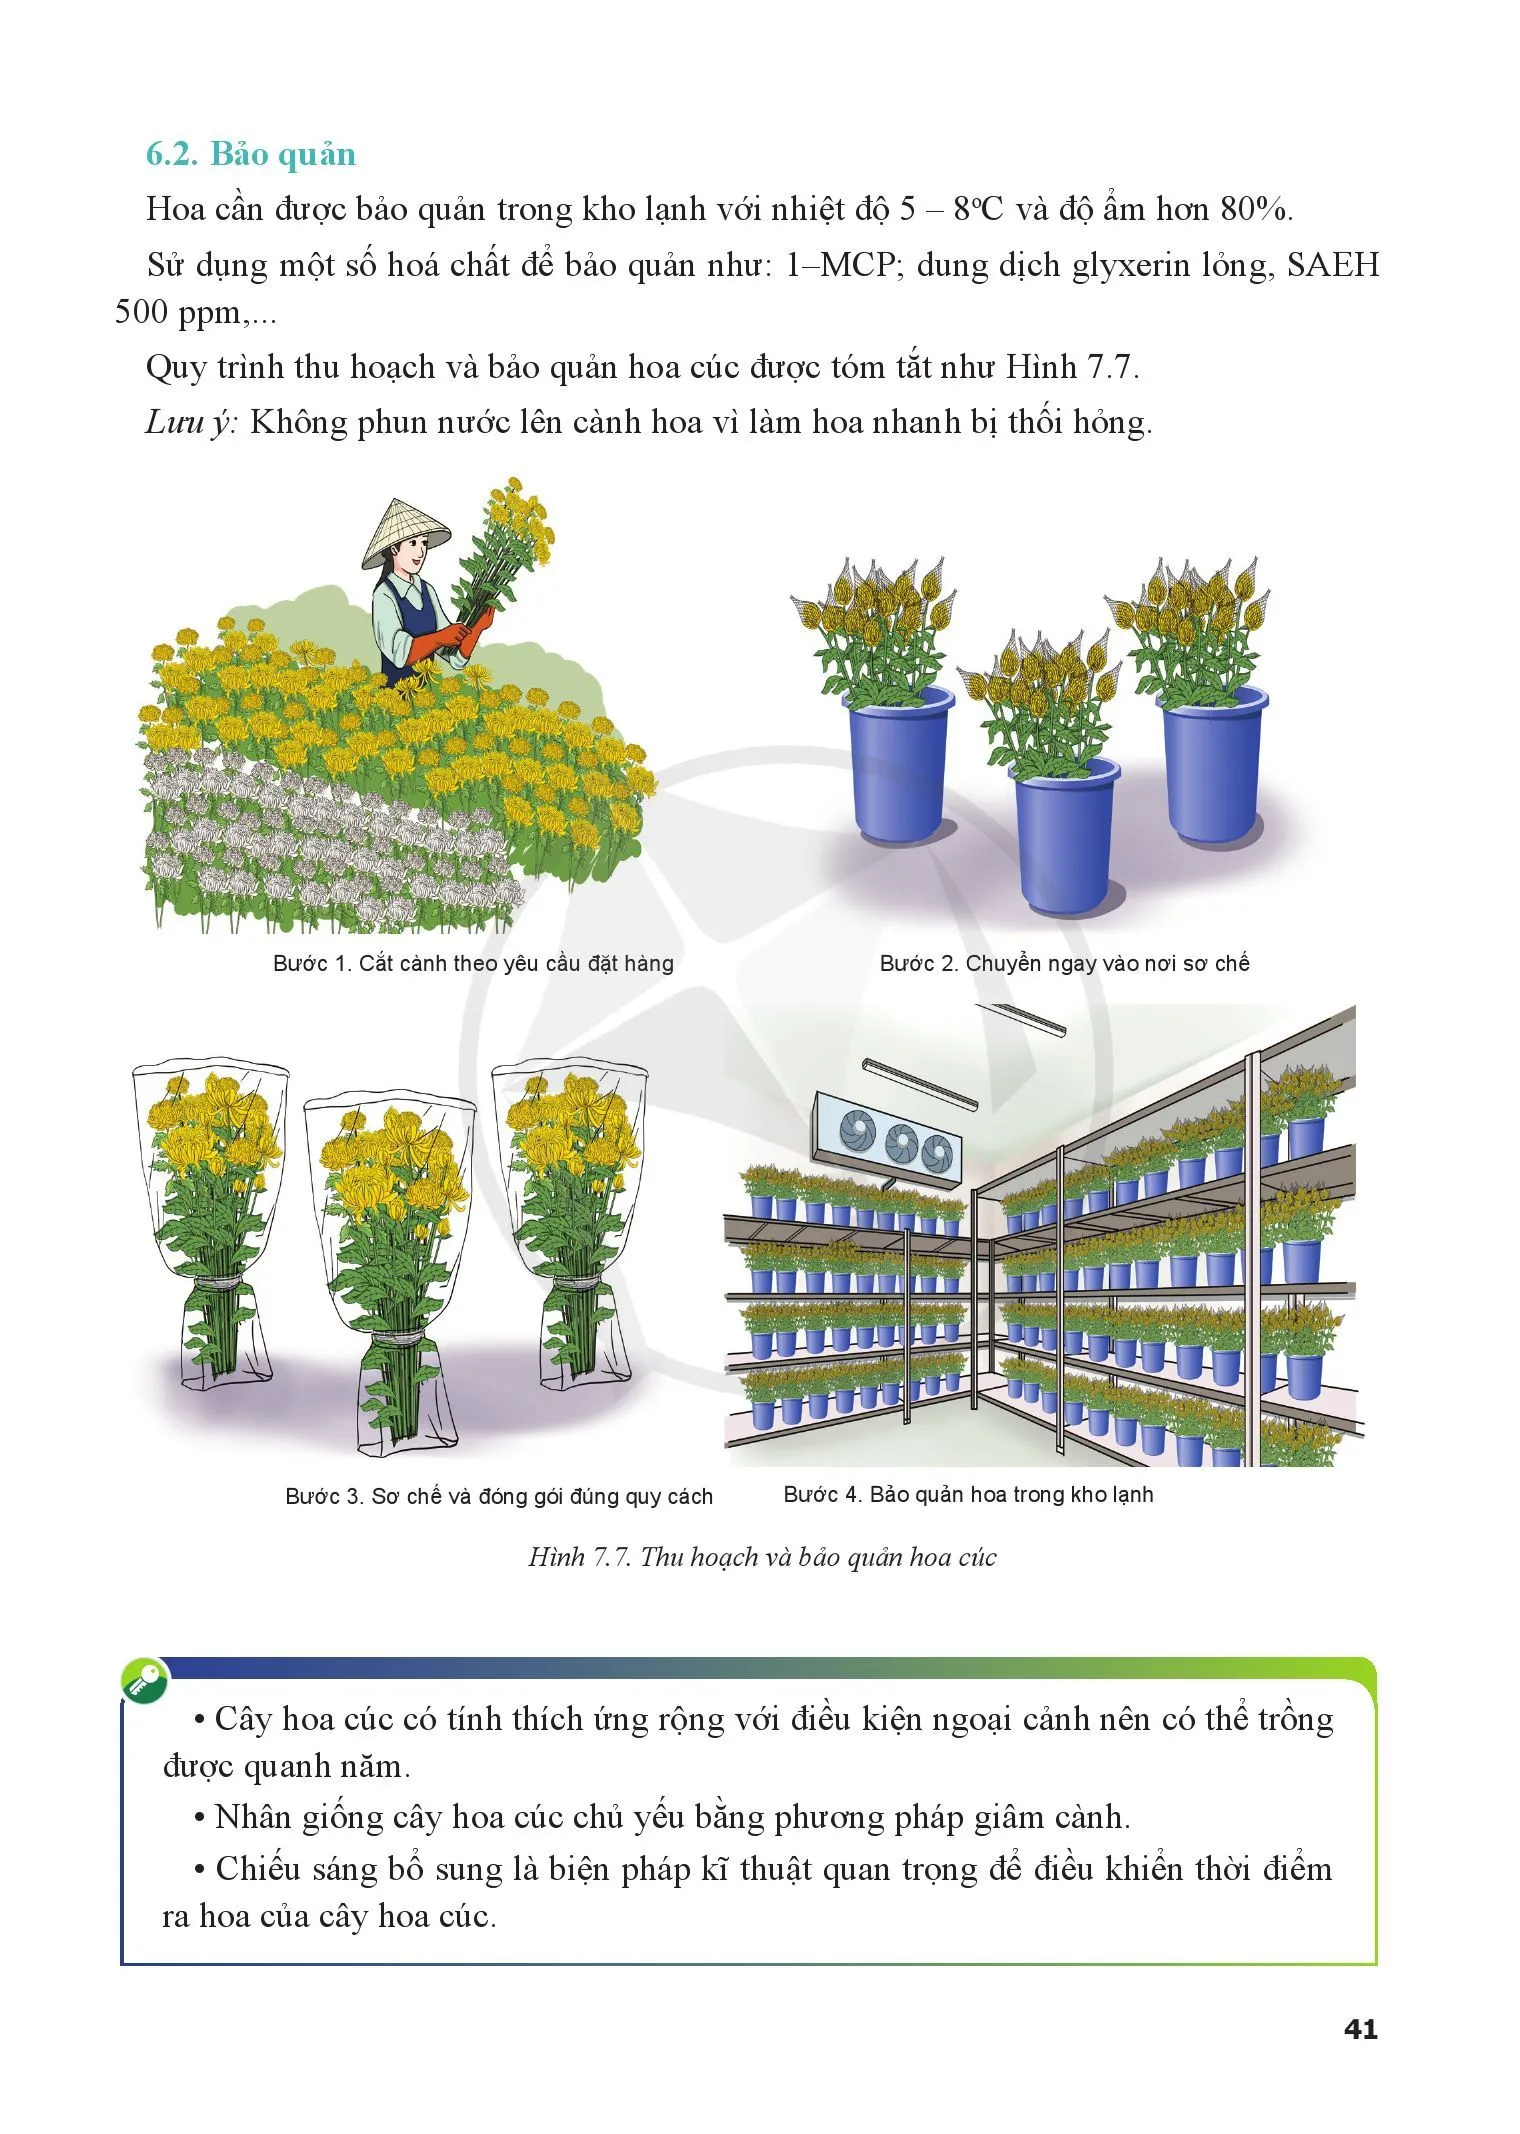 Bài 7. Kĩ thuật trồng và chăm sóc cây hoa cúc